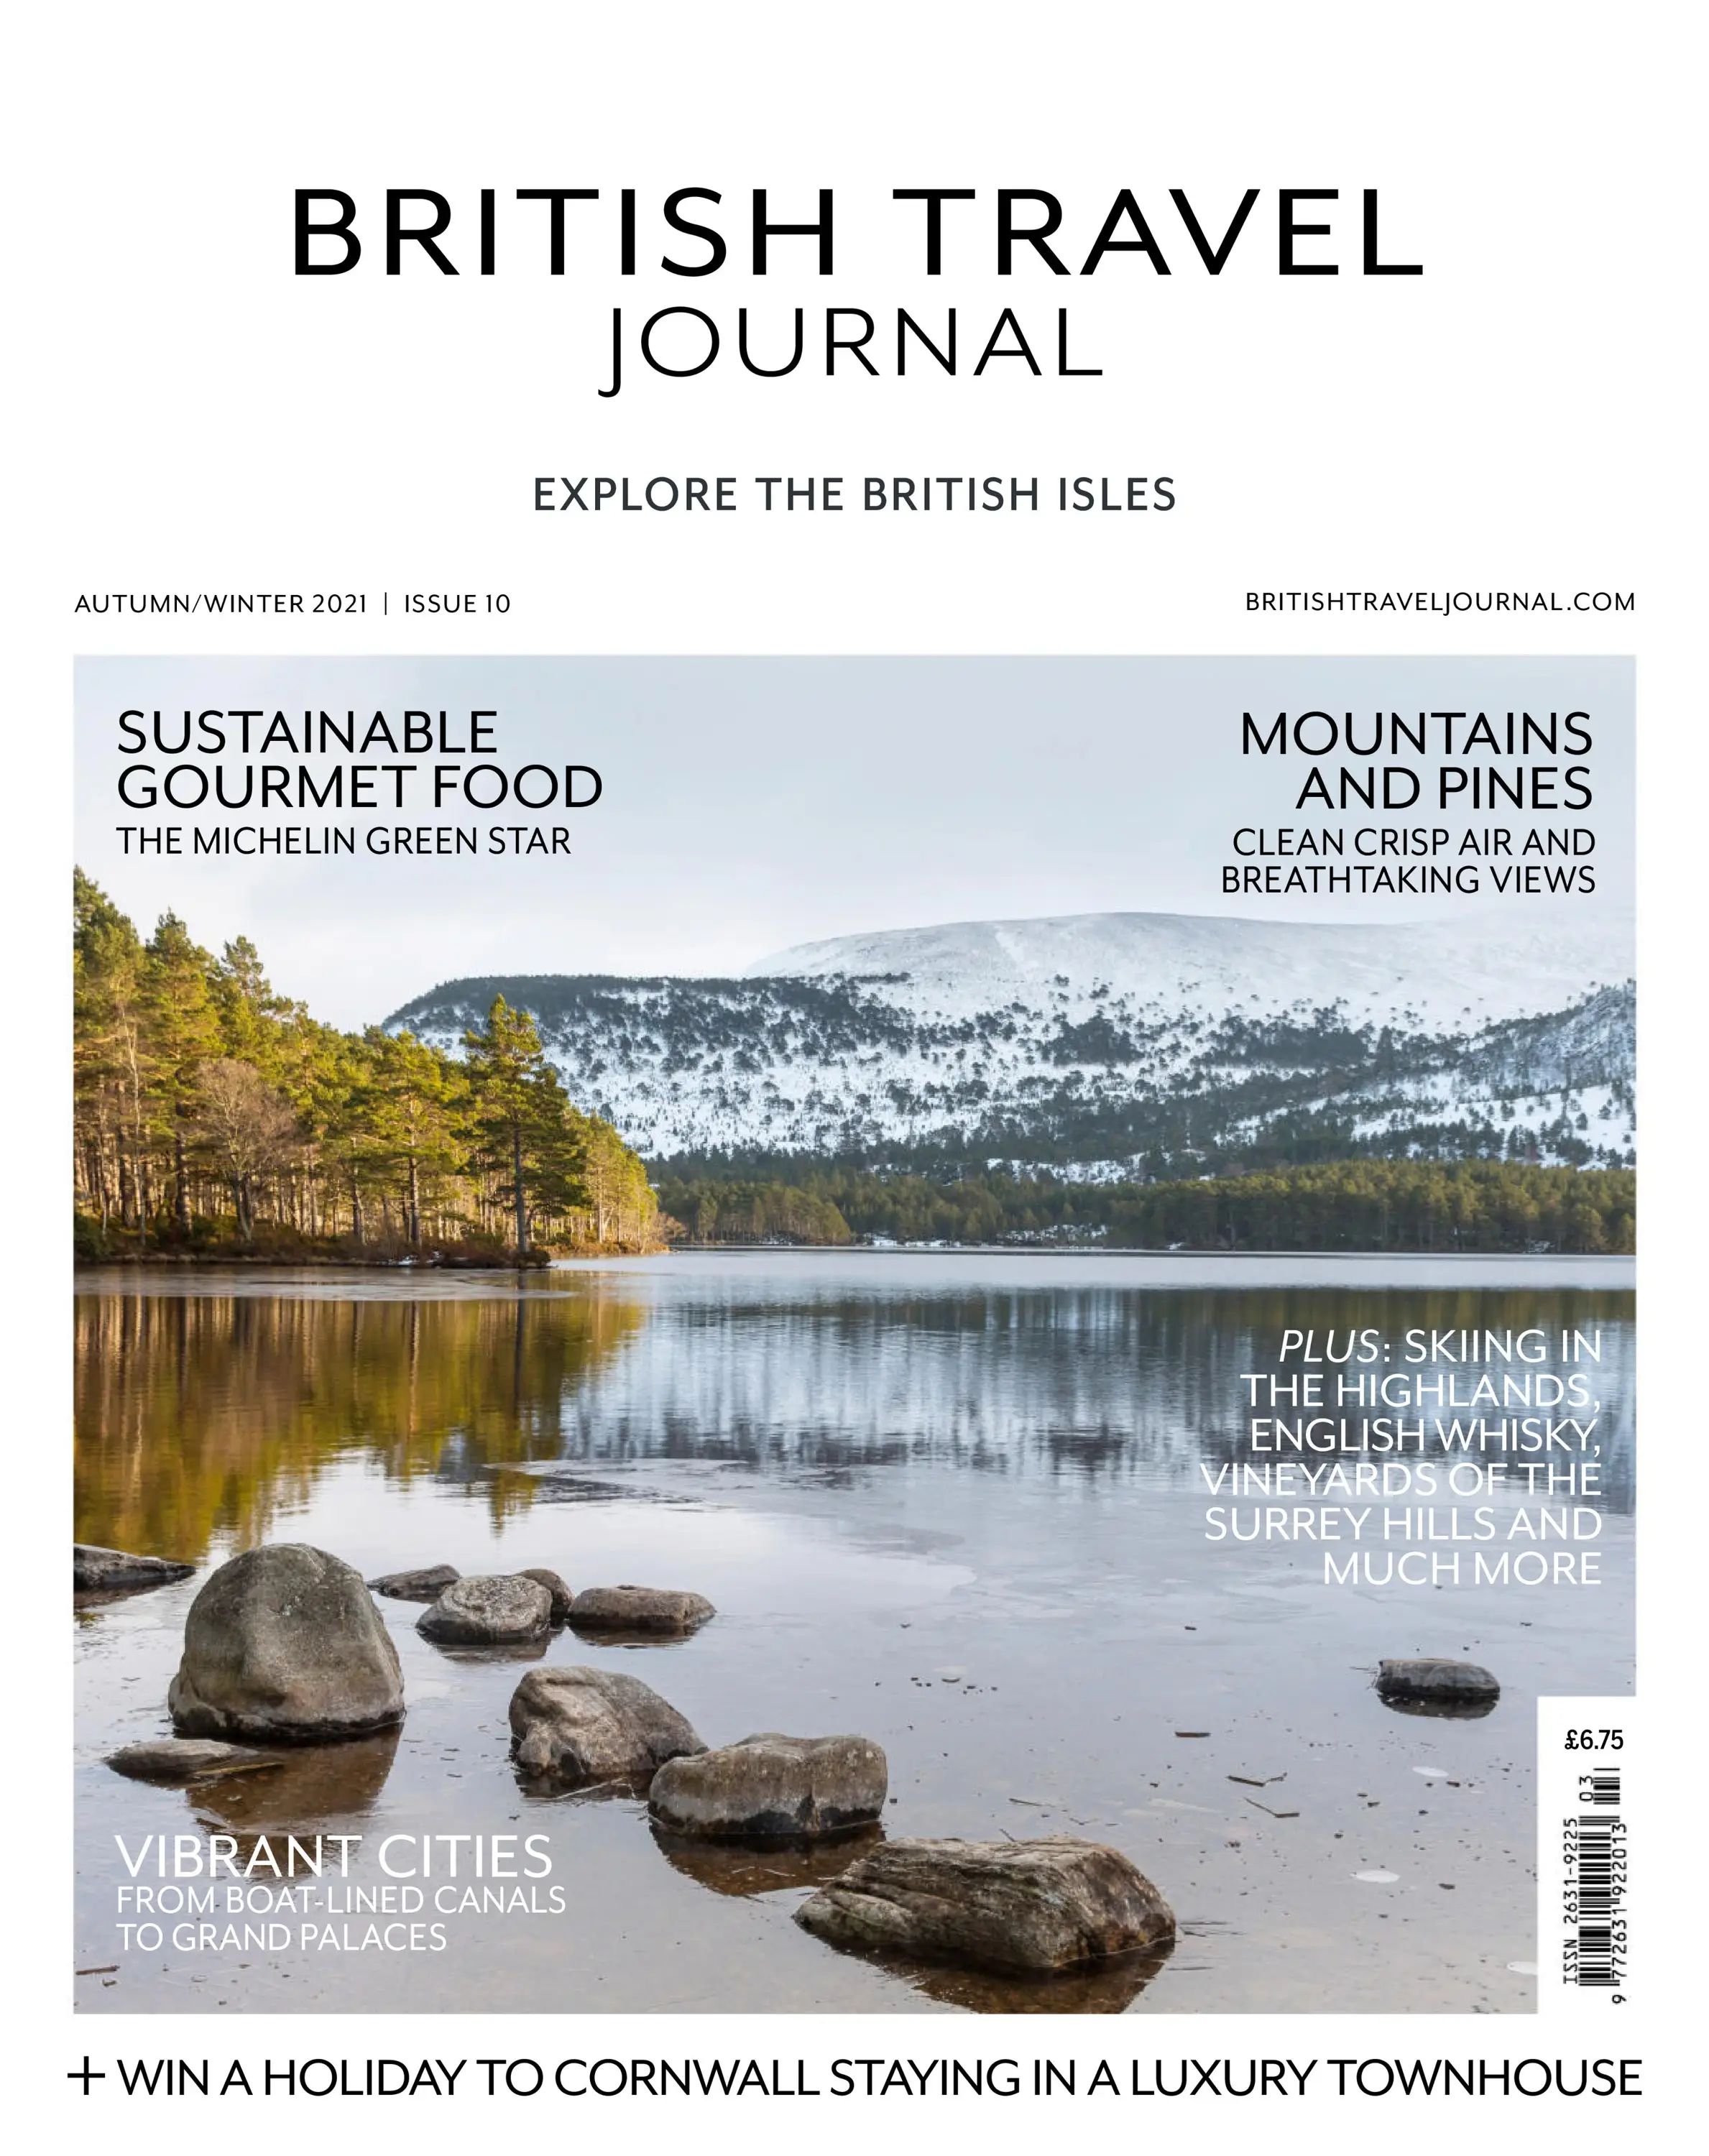 British Travel Journal September 2021 / AvaxHome